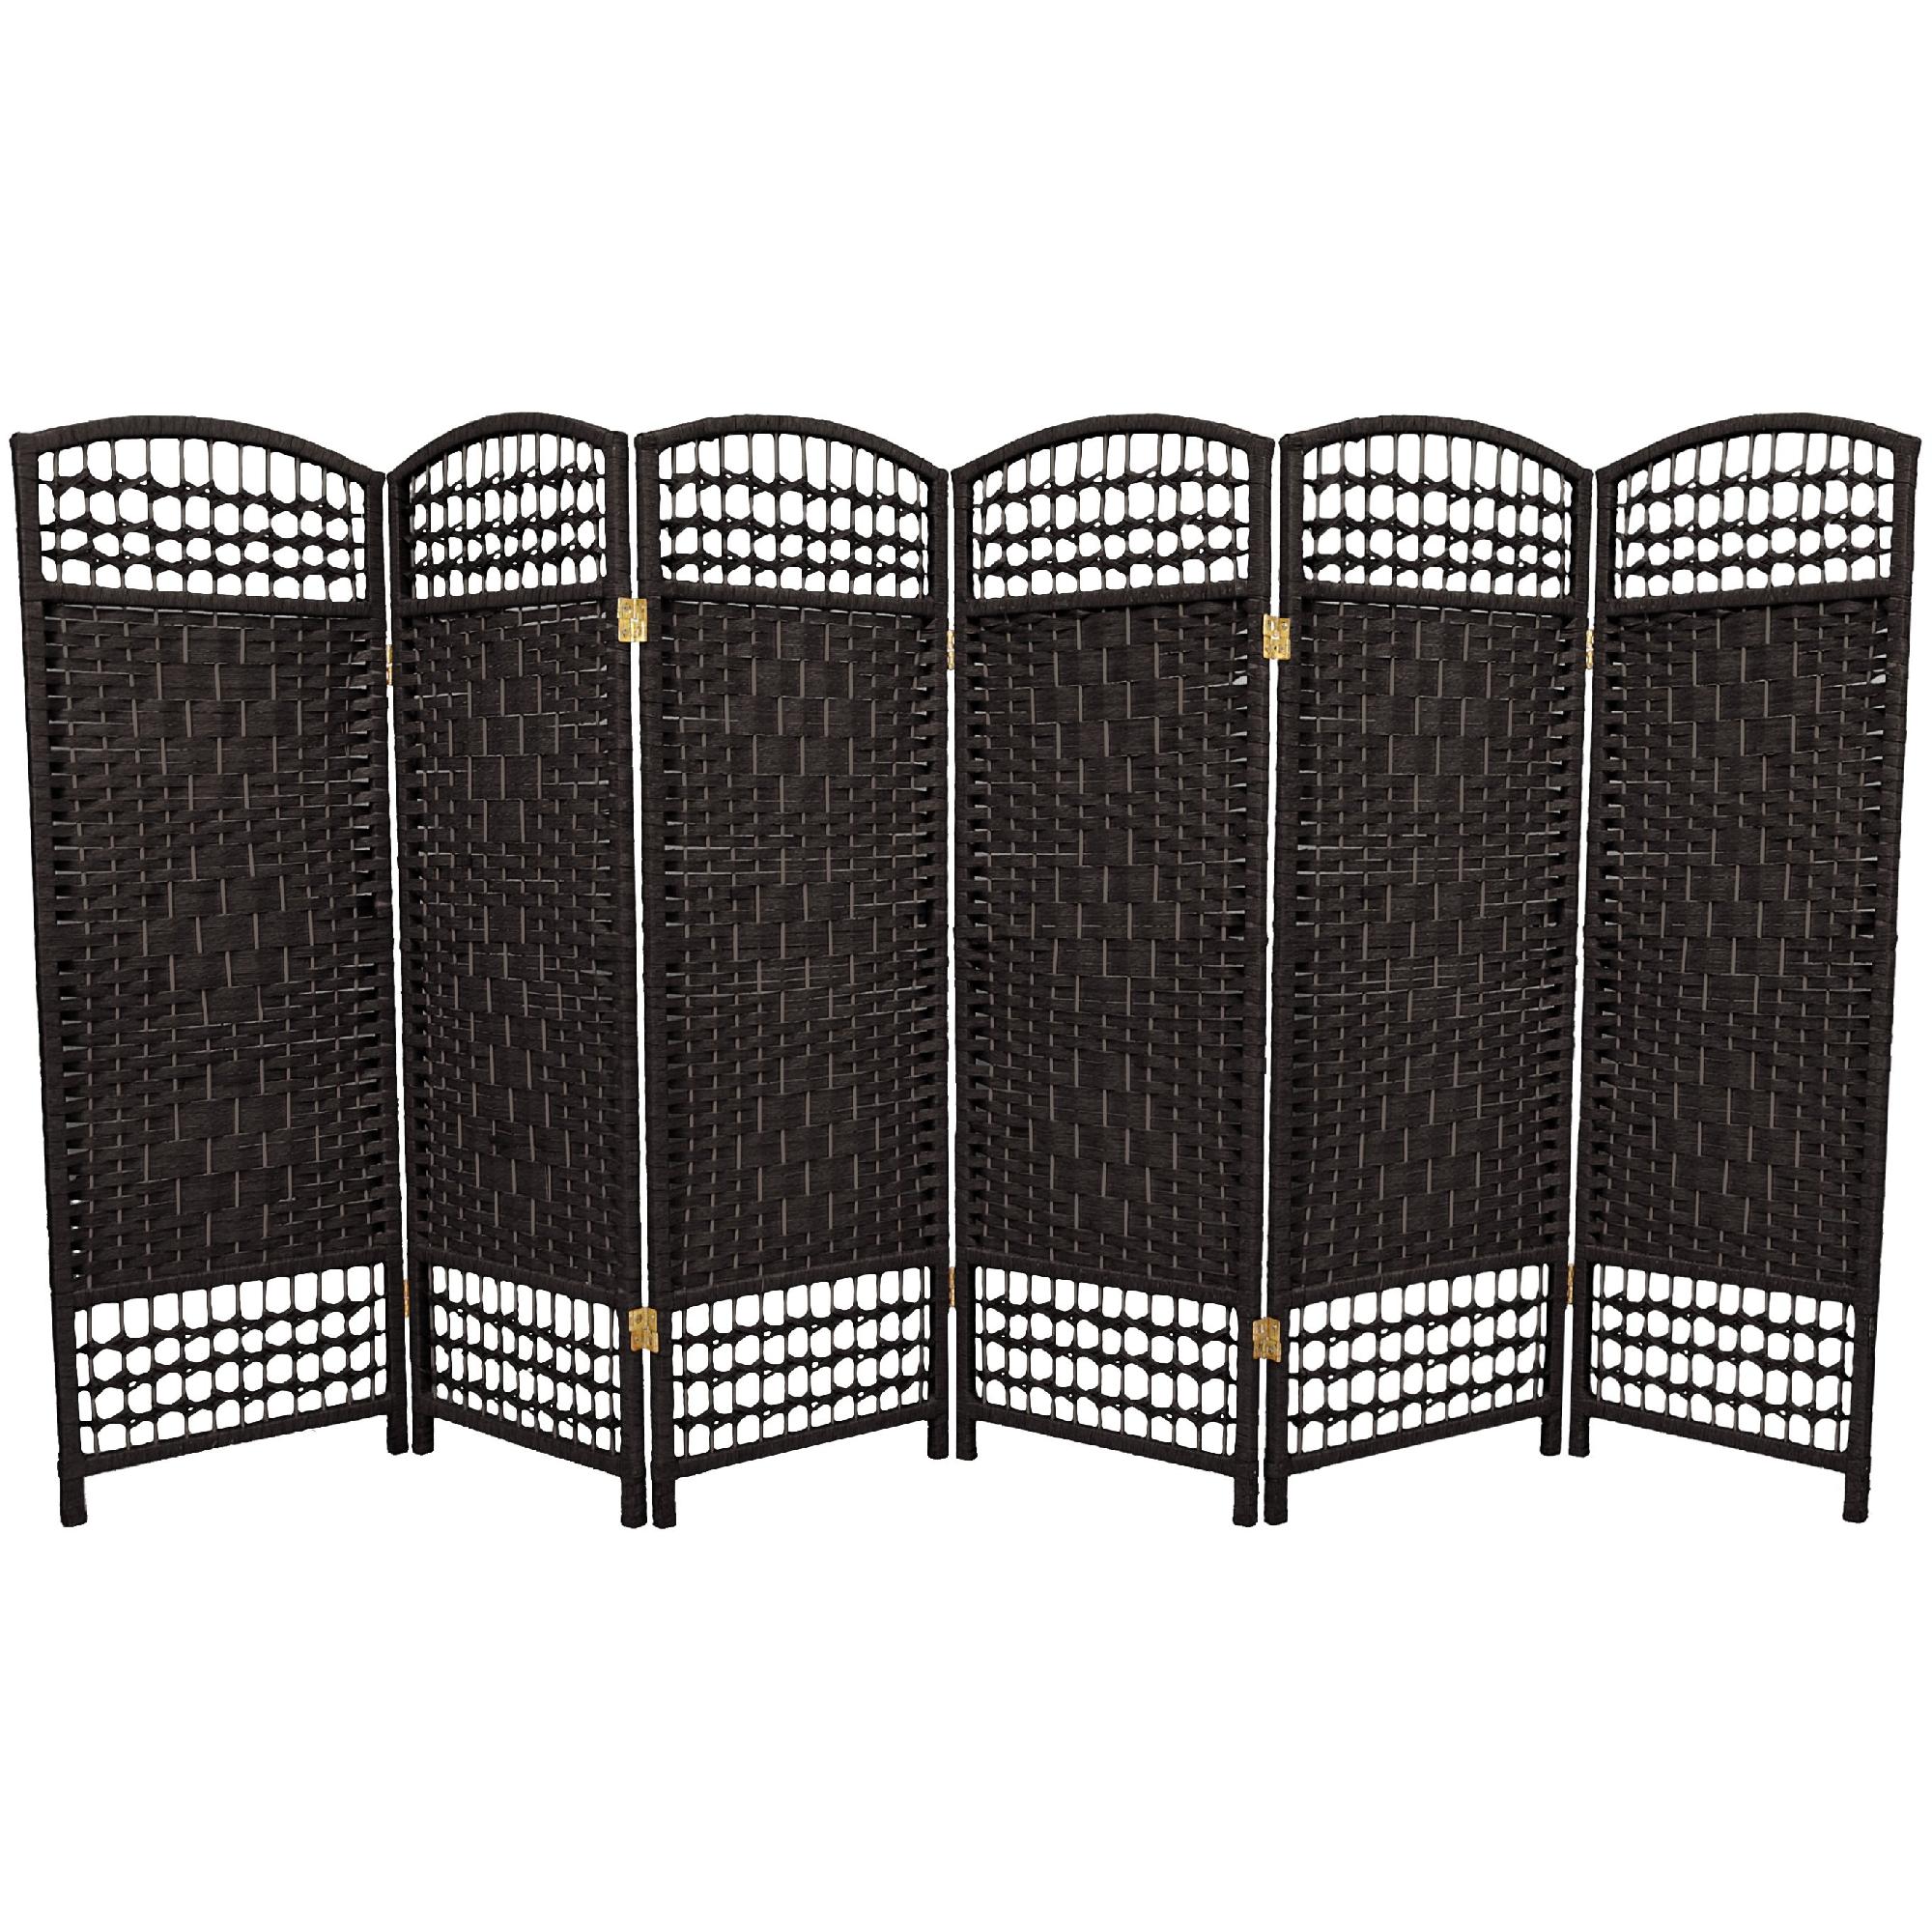 Oriental Furniture 4 ft. Tall Fiber Weave Room Divider - 5 Panel - Black